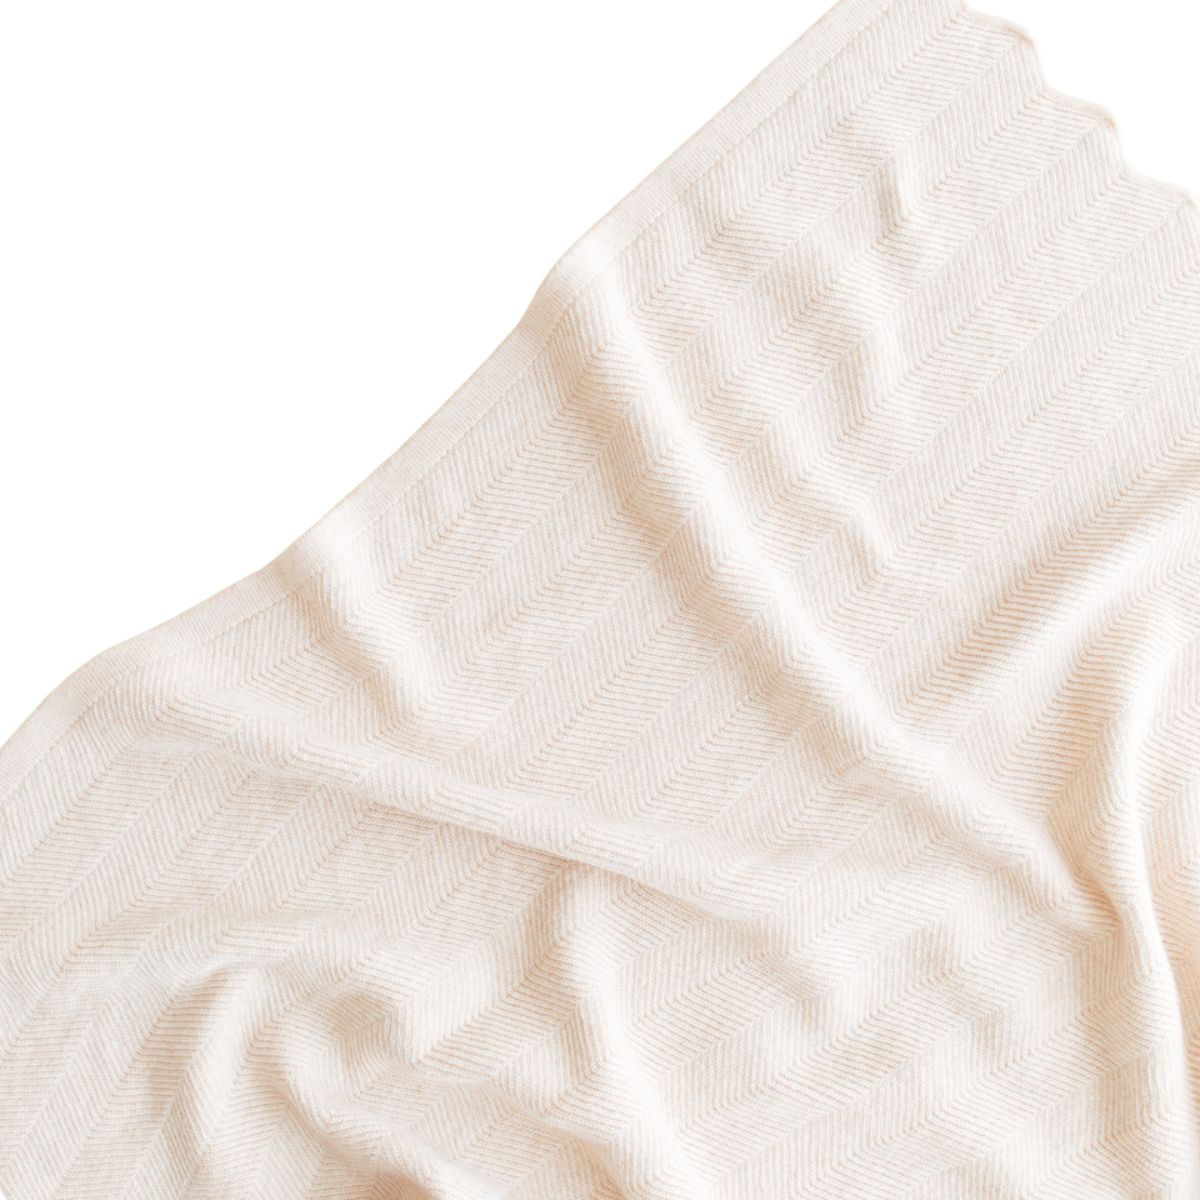 Deken freddie van Hvid, in cream, biedt warmte en comfort voor je baby met zacht merino lamswol. Ribgebreid, zacht, zwaar en warm. Met mooi stijlvol patroon. In diverse kleuren. VanZus